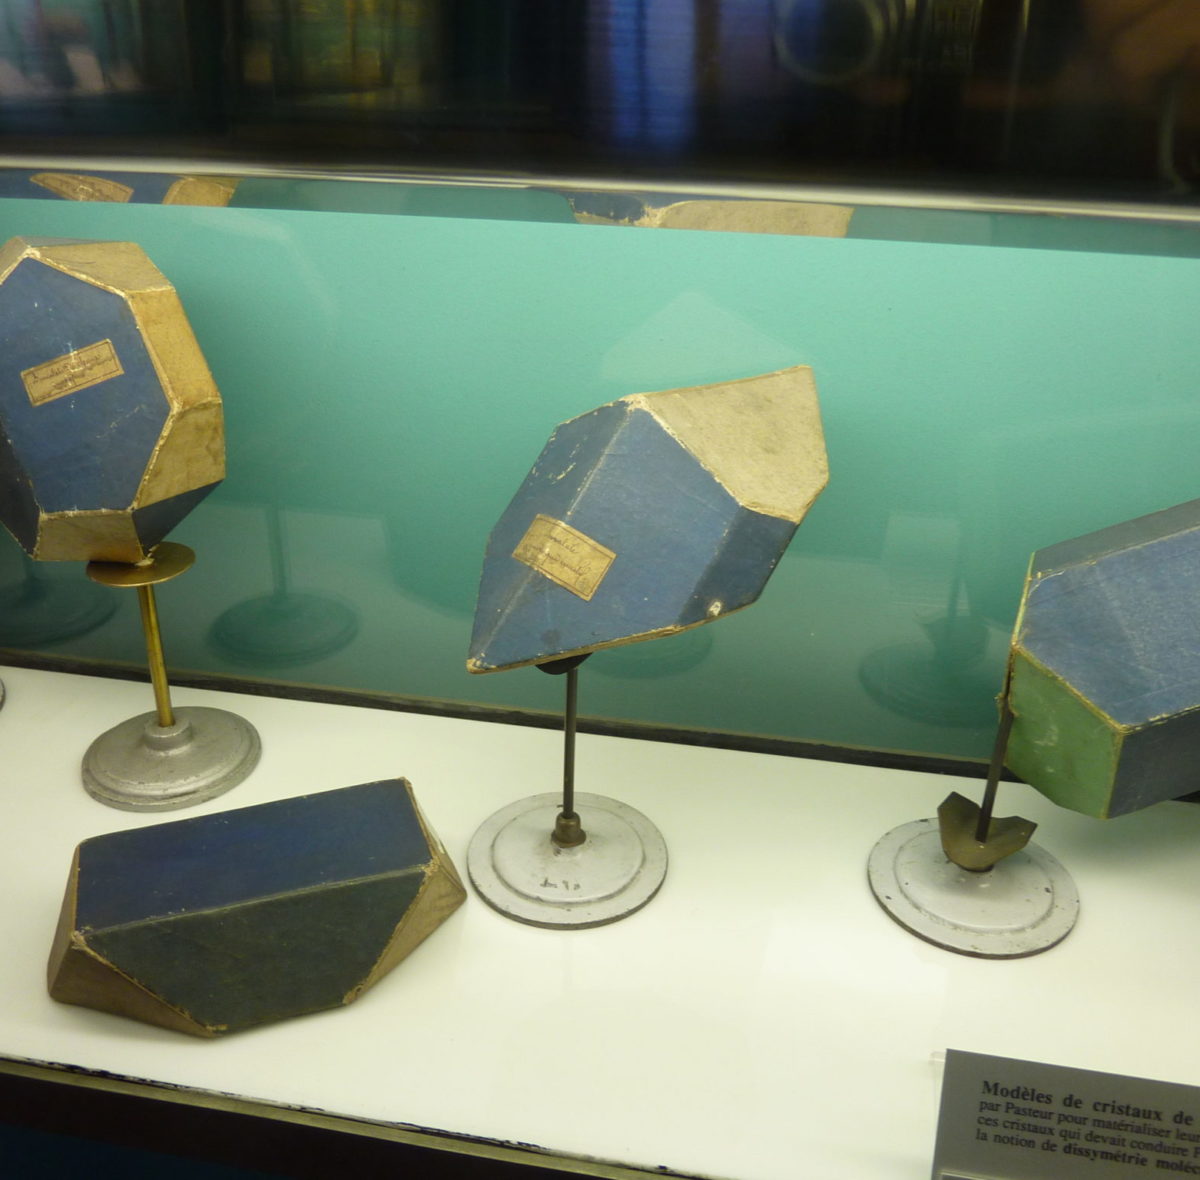 Modelli di cristalli di paratartrato costruiti dallo stesso Pasteur